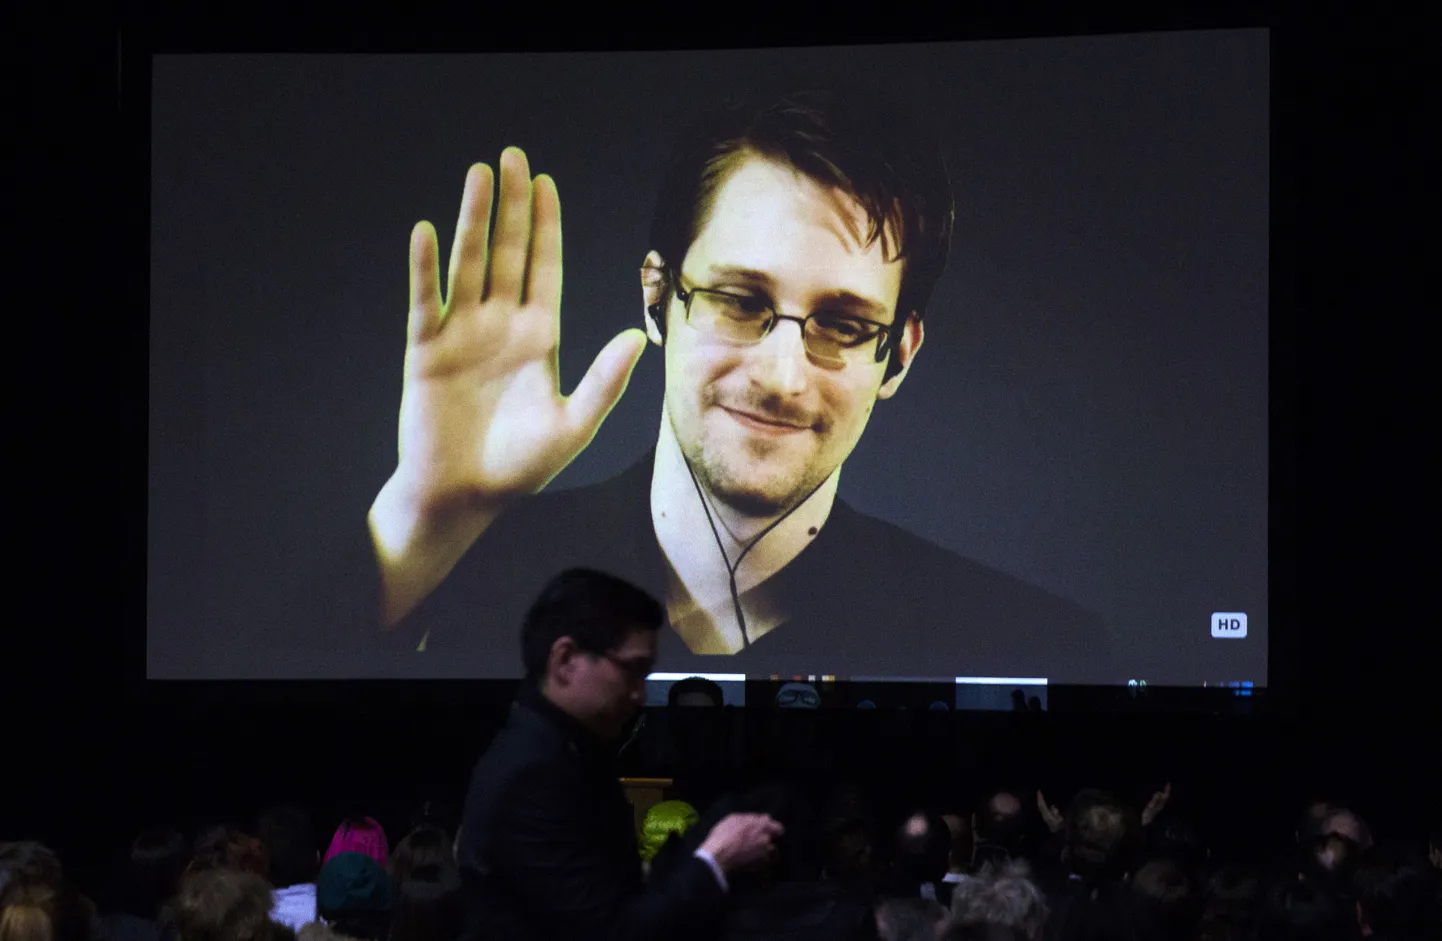 Бывший сотрудник ЦРУ Эдвард Сноуден готов вернуться в США при условии гарантии беспристрастного суда над ним.